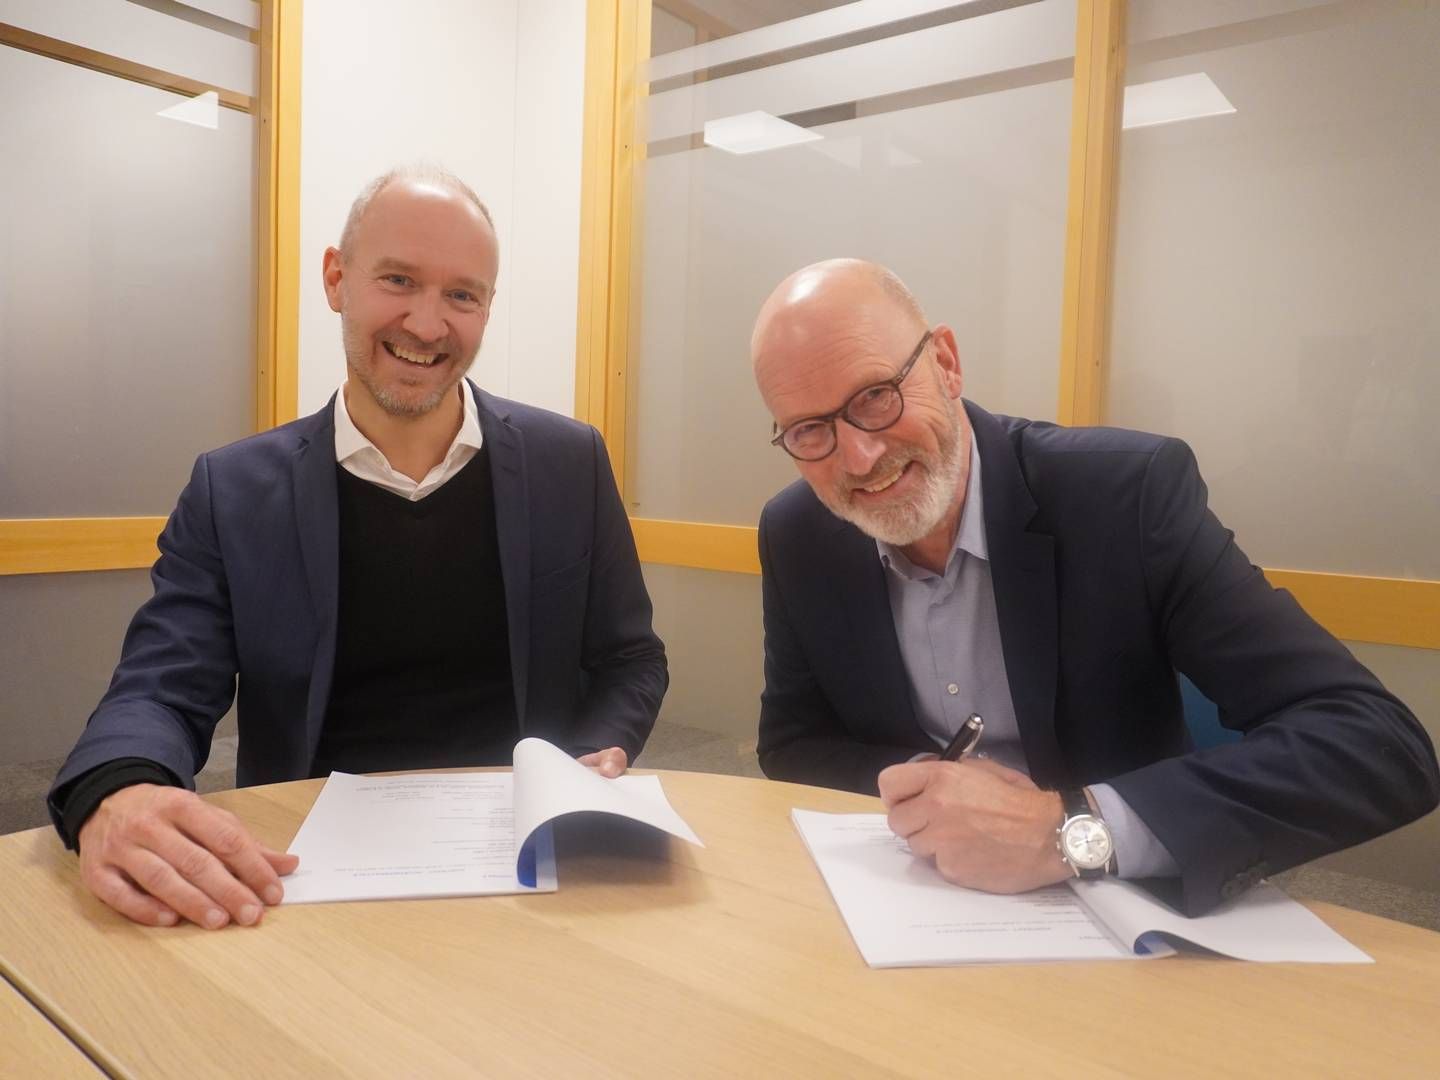 Konserndirektør i Sparebank 1 SMN, Vegard Helland (t.v), og administrerende direktør i Vegamot, Marius Maske, signerer avtale om ny hovedbankforbindelse. | Foto: Sparebank 1 SMN / PR